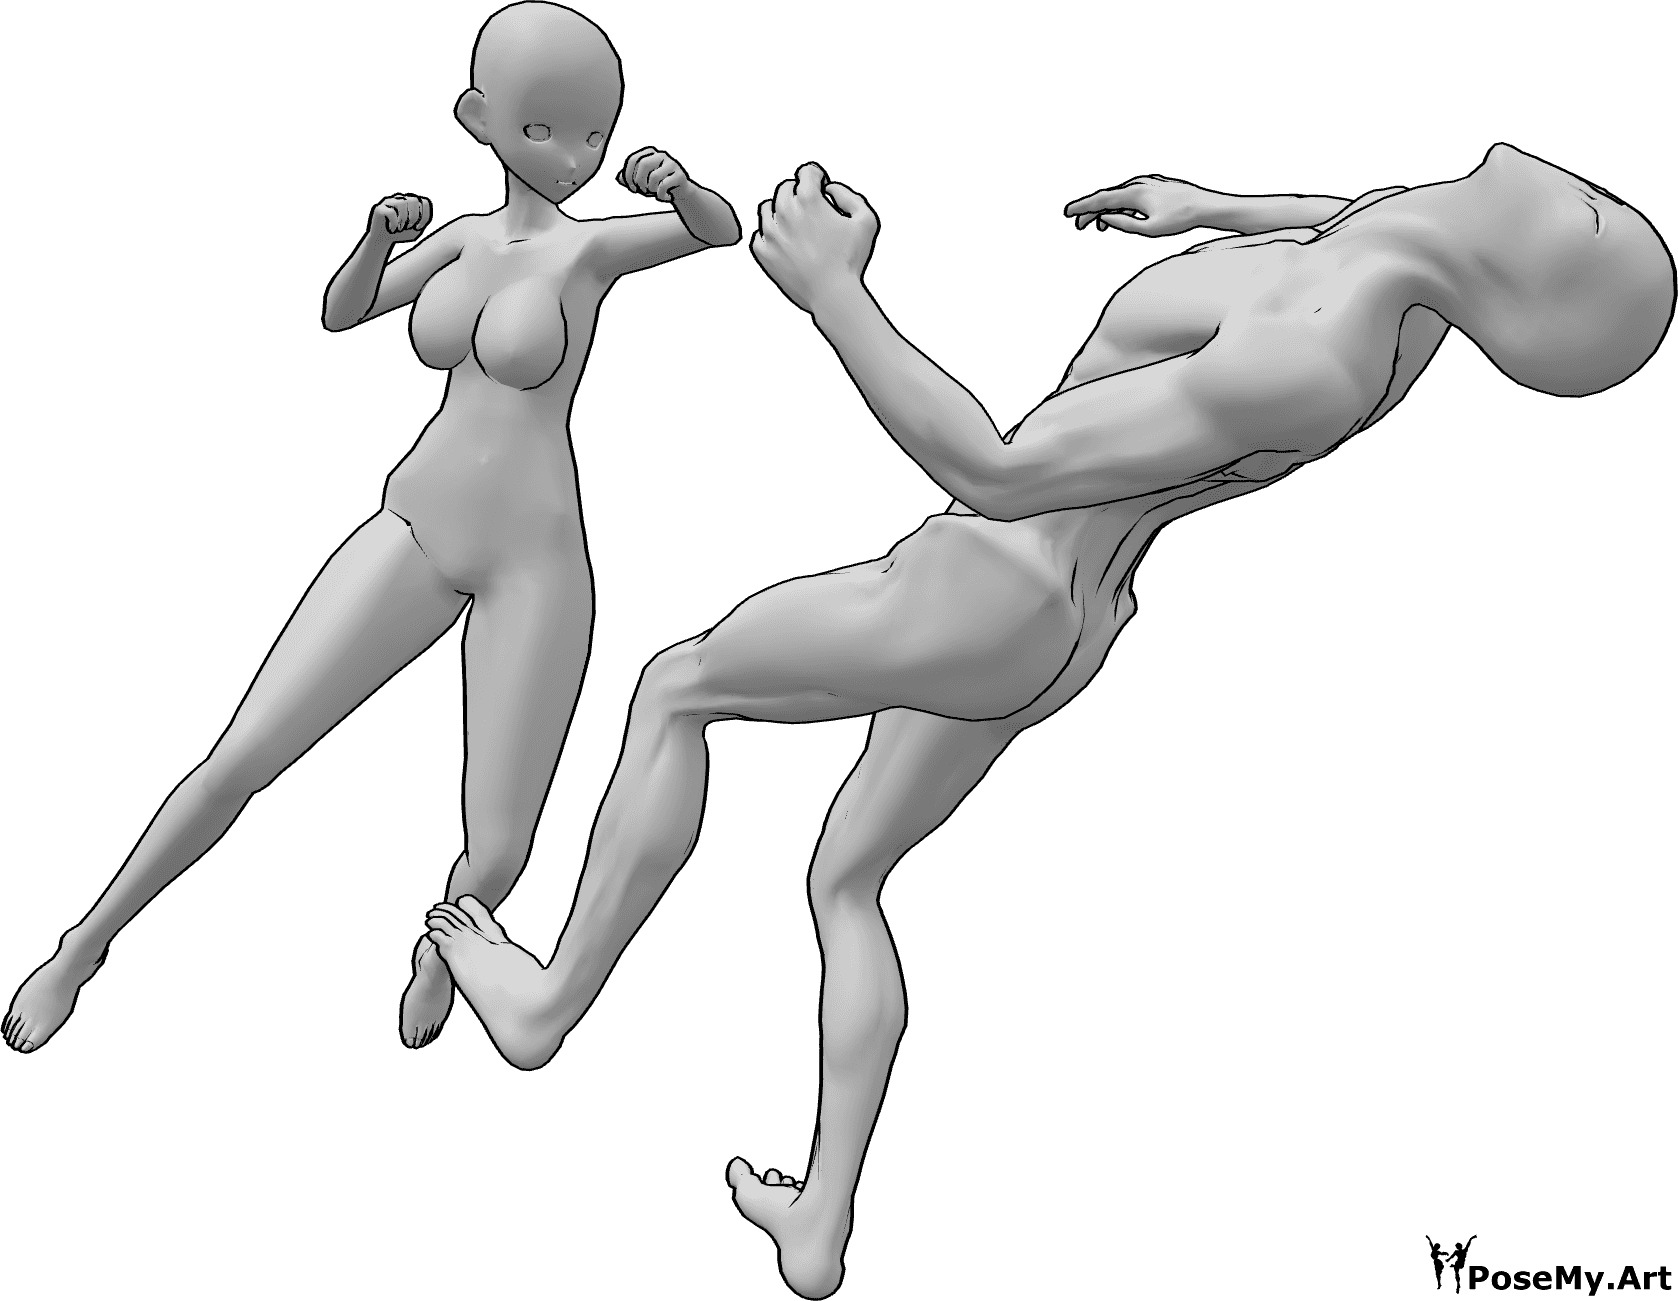 Riferimento alle pose- Anime femmina in posa da pugno - Il nemico cade all'indietro inconsapevolmente a causa di un pugno alla testa.